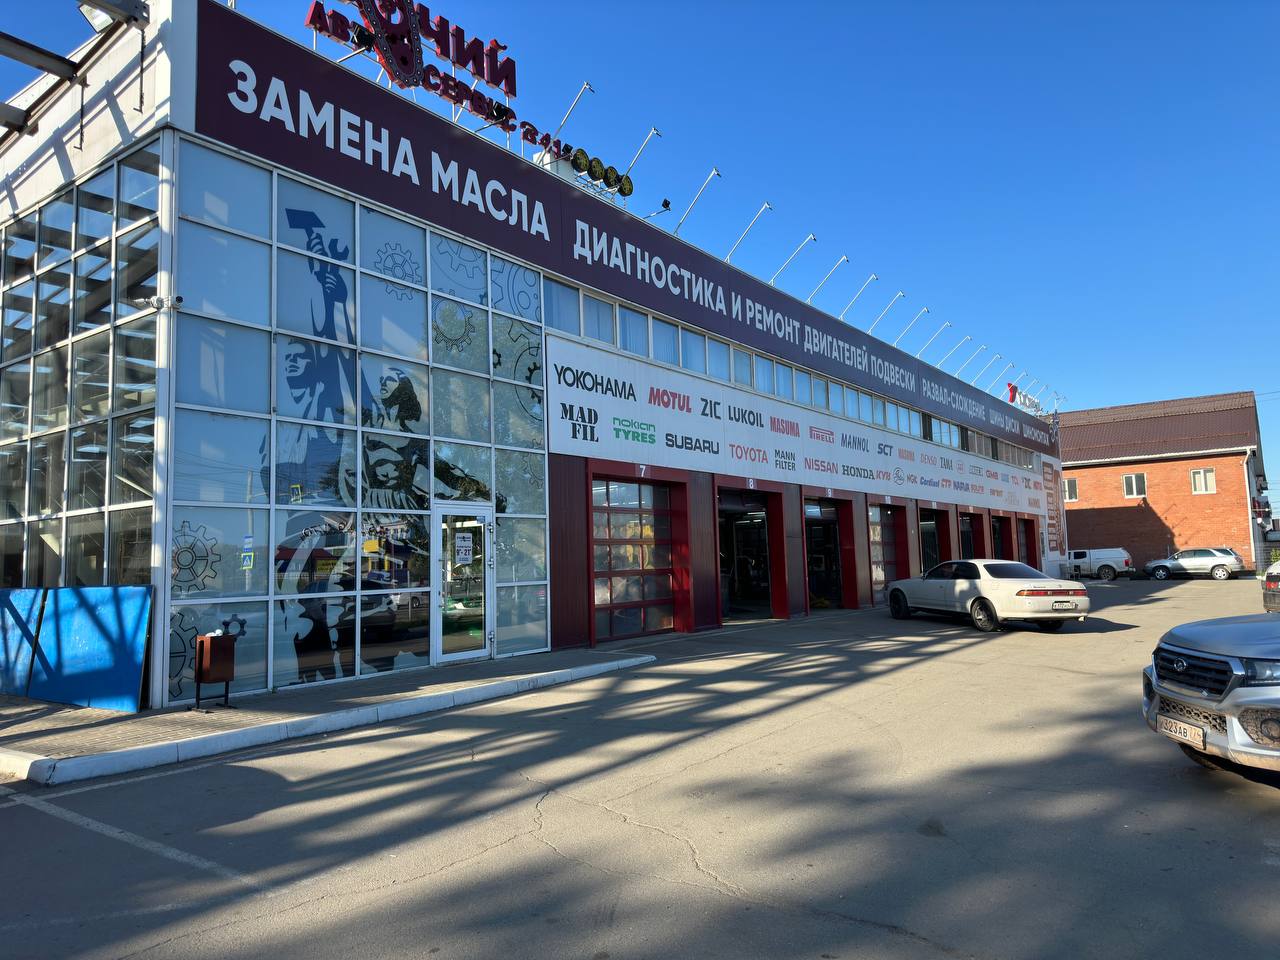 Цены на ремонт автомобилей в городе Иркутске | ВЭБ - АвтоСервис